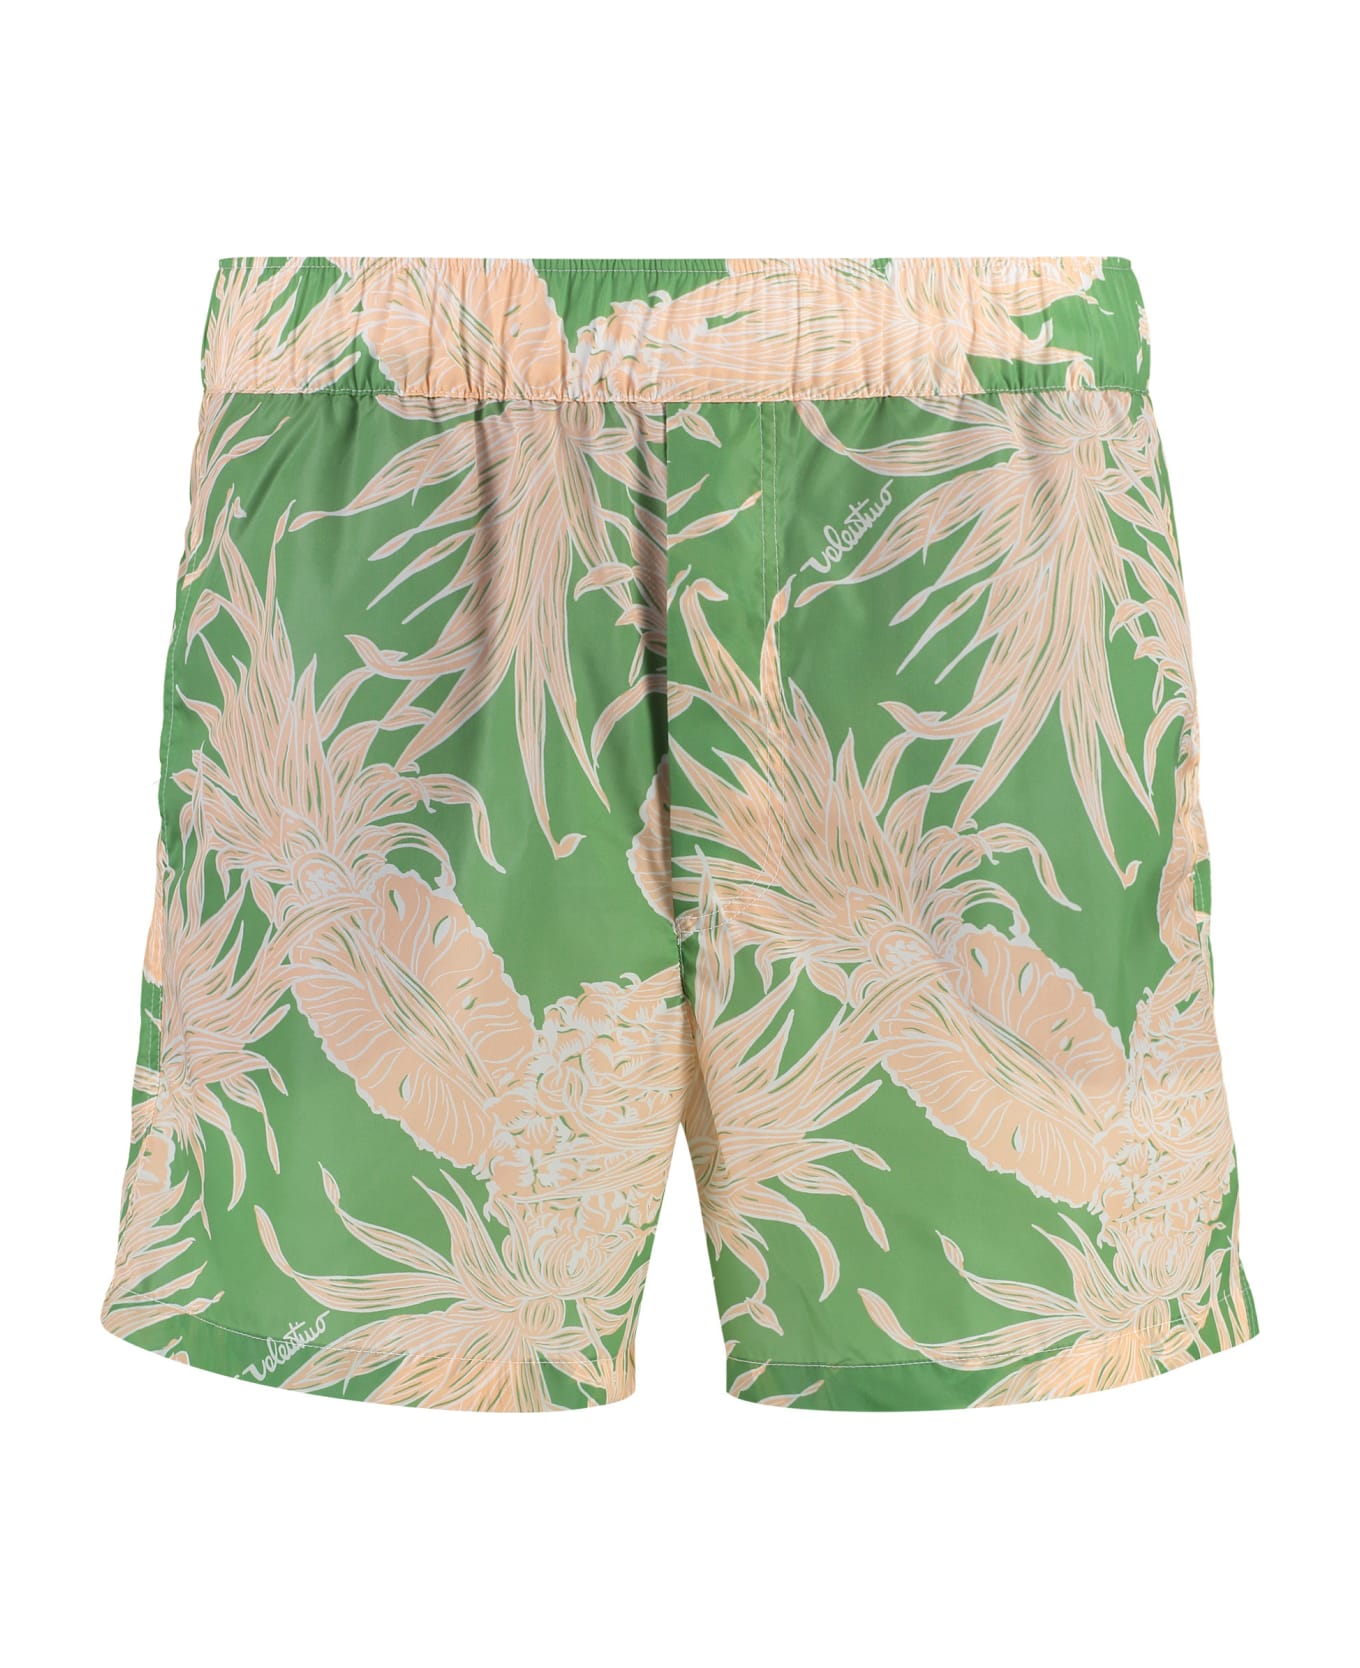 Valentino Printed Swim Shorts - Multicolor 水着